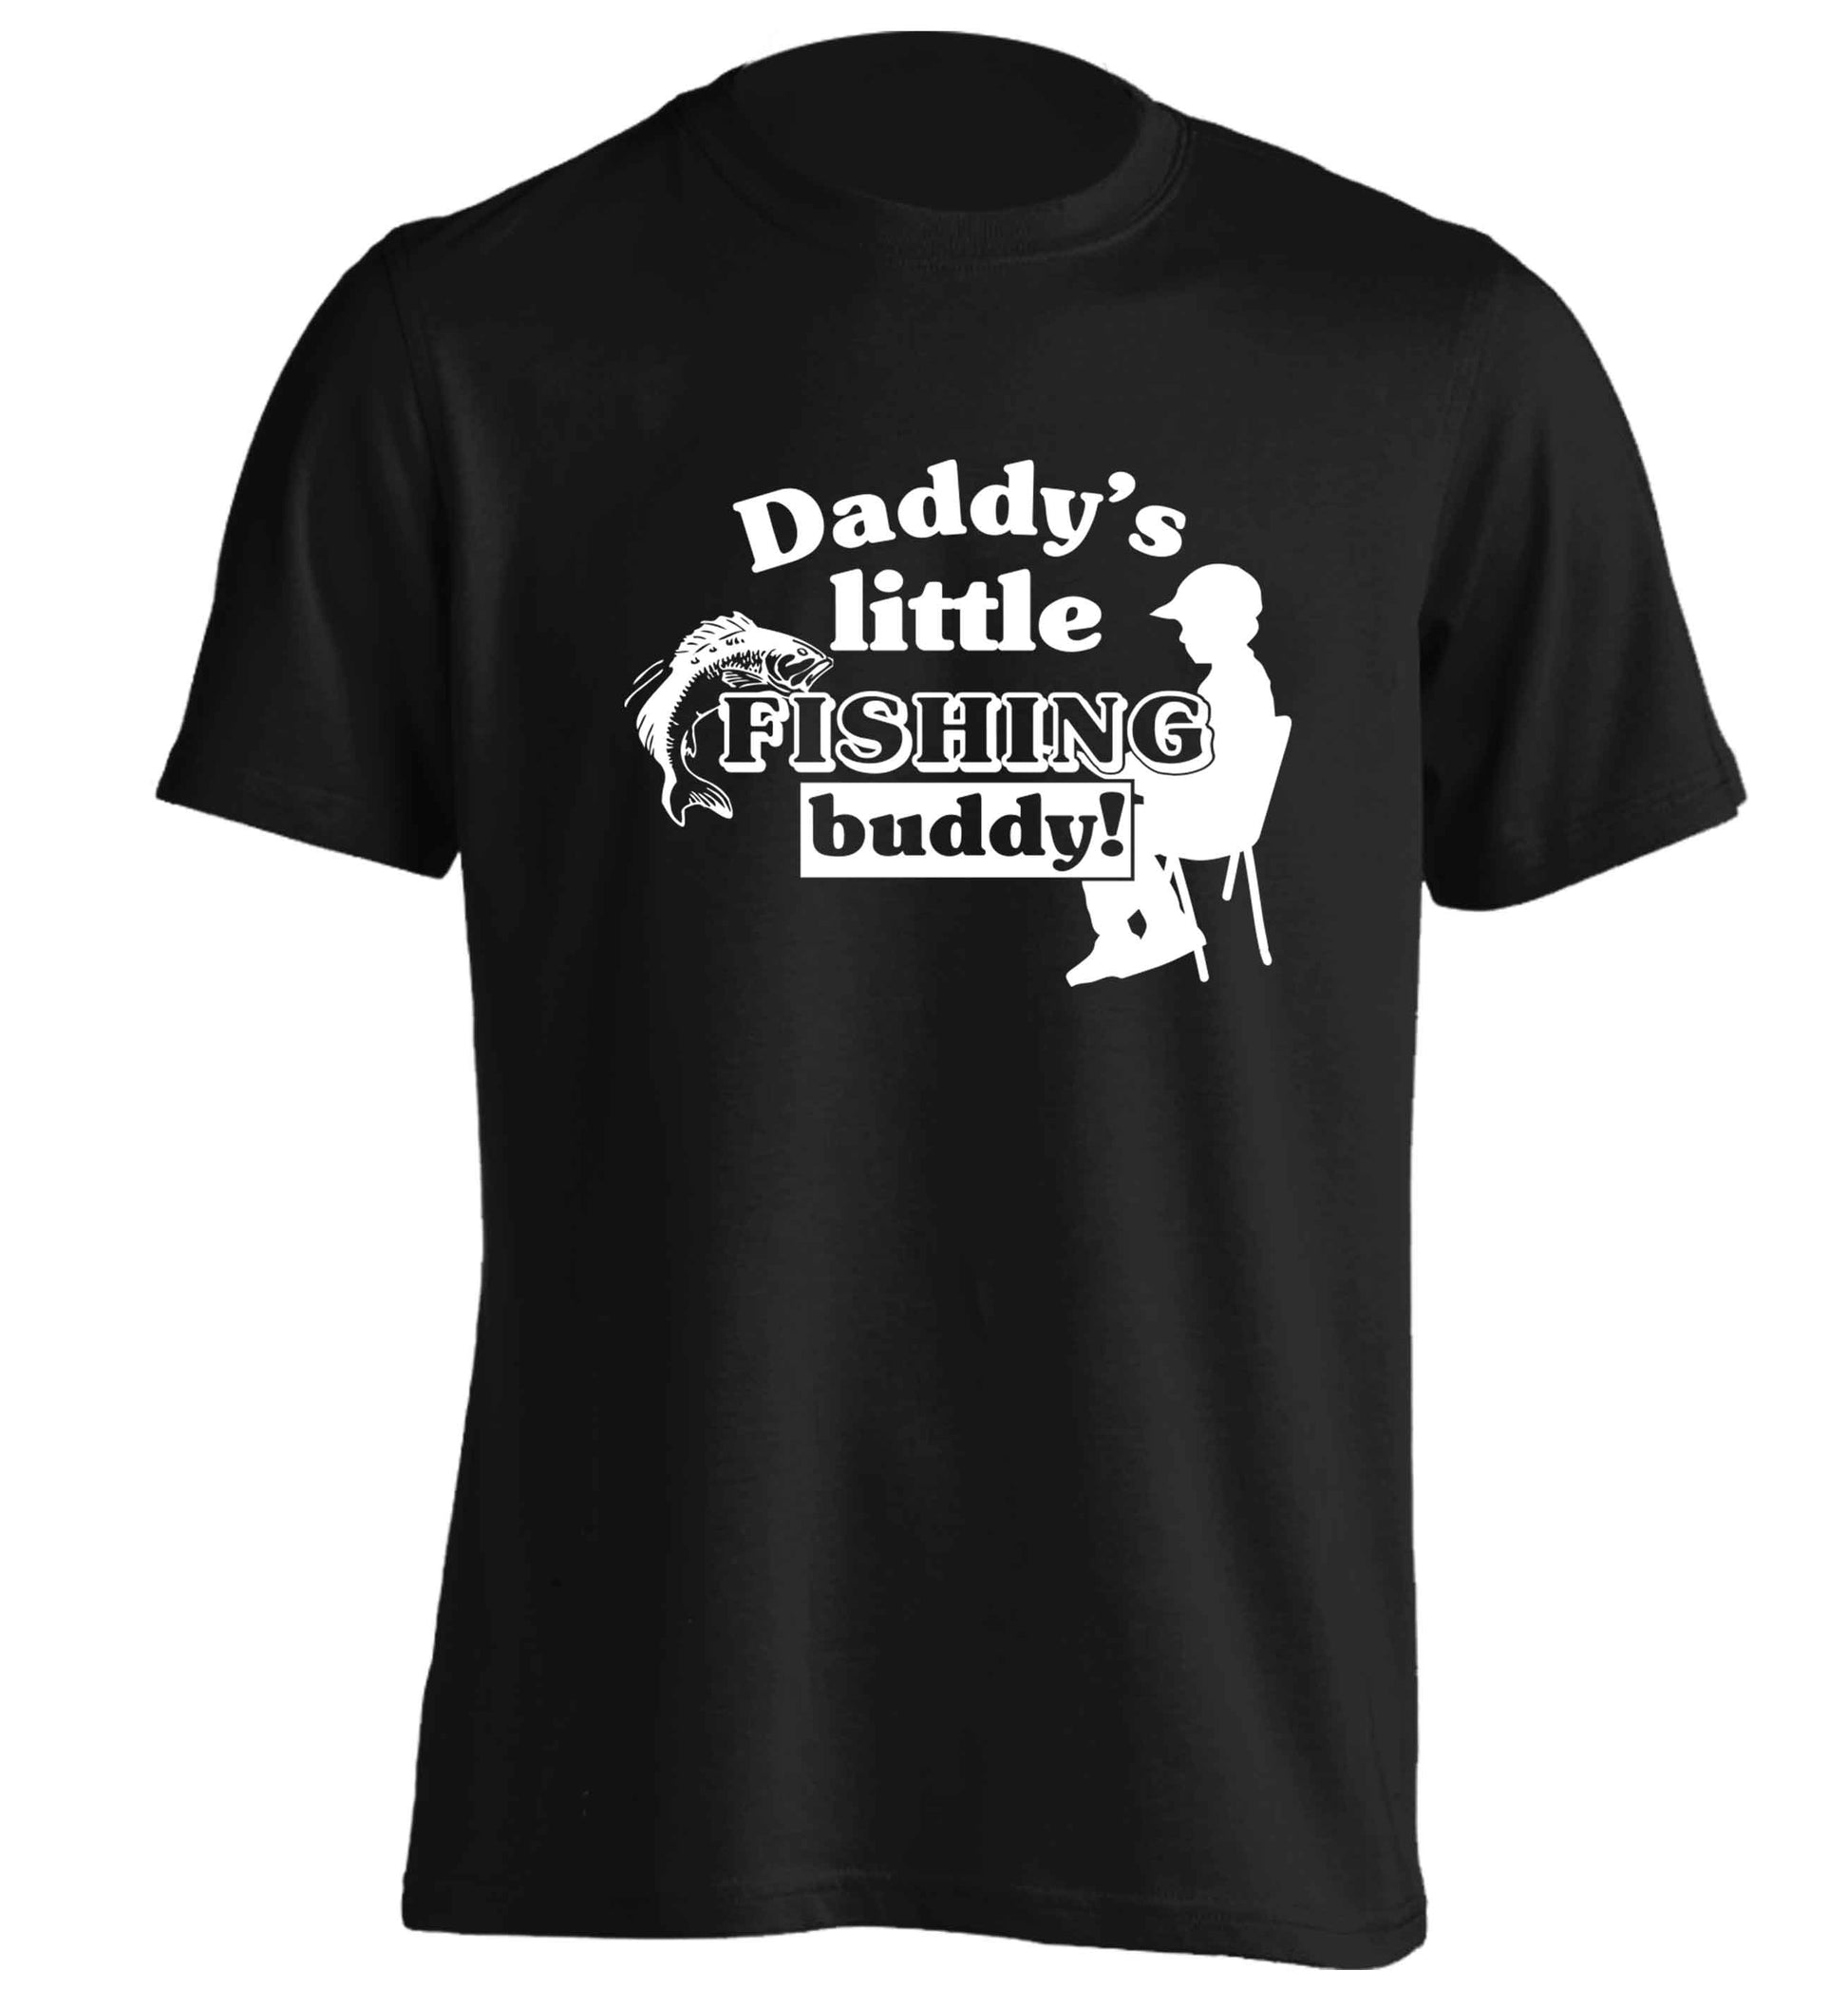 Daddy's little fishing buddy adults unisex black Tshirt 2XL